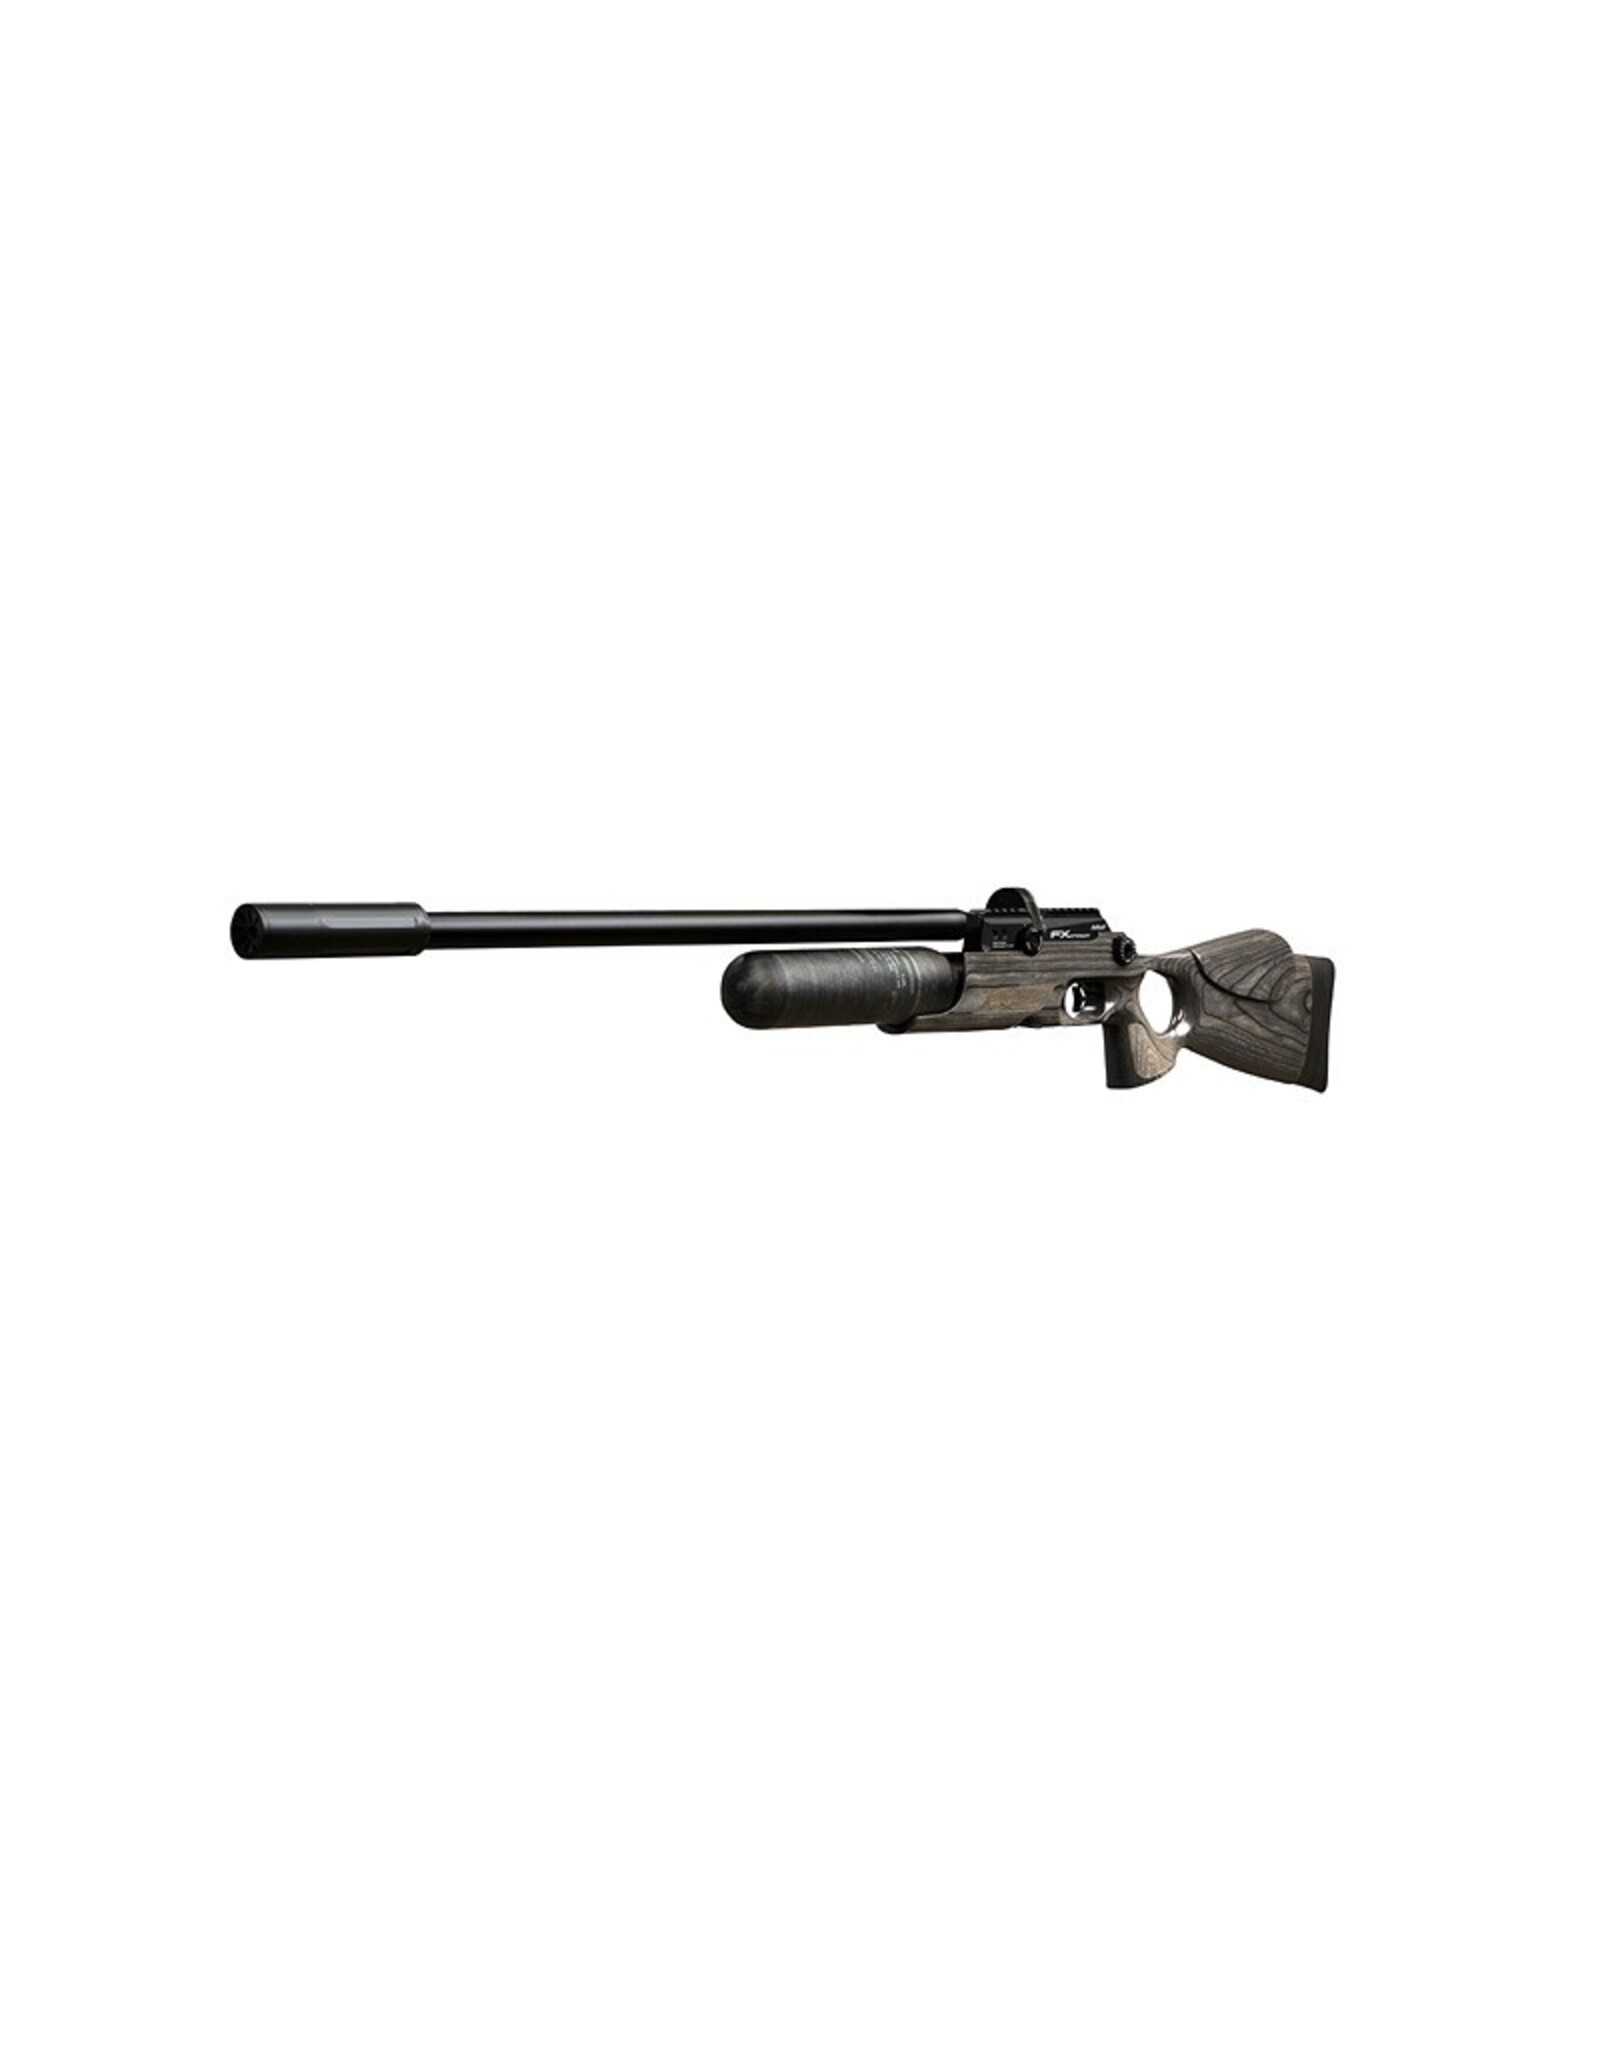 FX Airguns FX Crown MKII Standard, Black Pepper Laminate  - 0.177 caliber